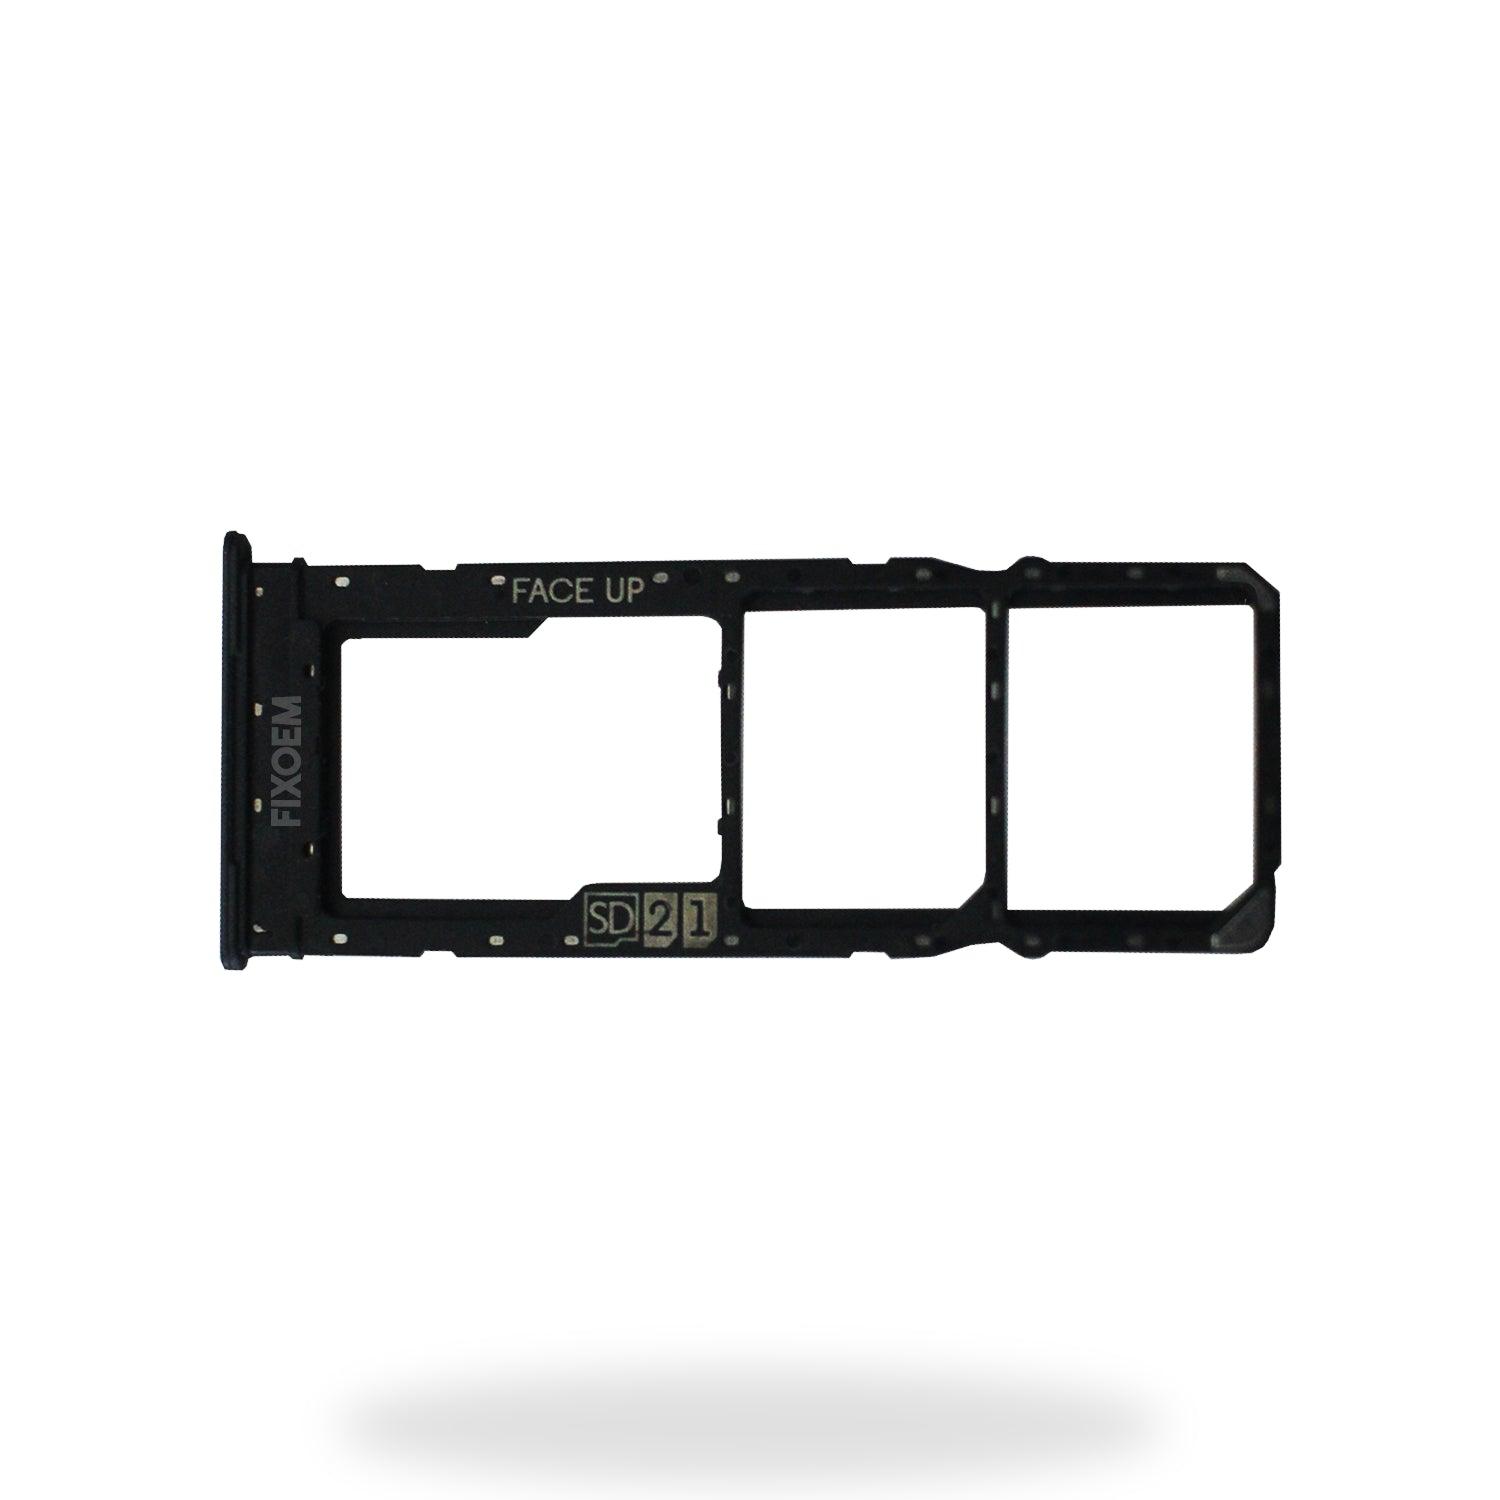 Charola Sim Moto G23 a solo $ 30.00 Refaccion y puestos celulares, refurbish y microelectronica.- FixOEM